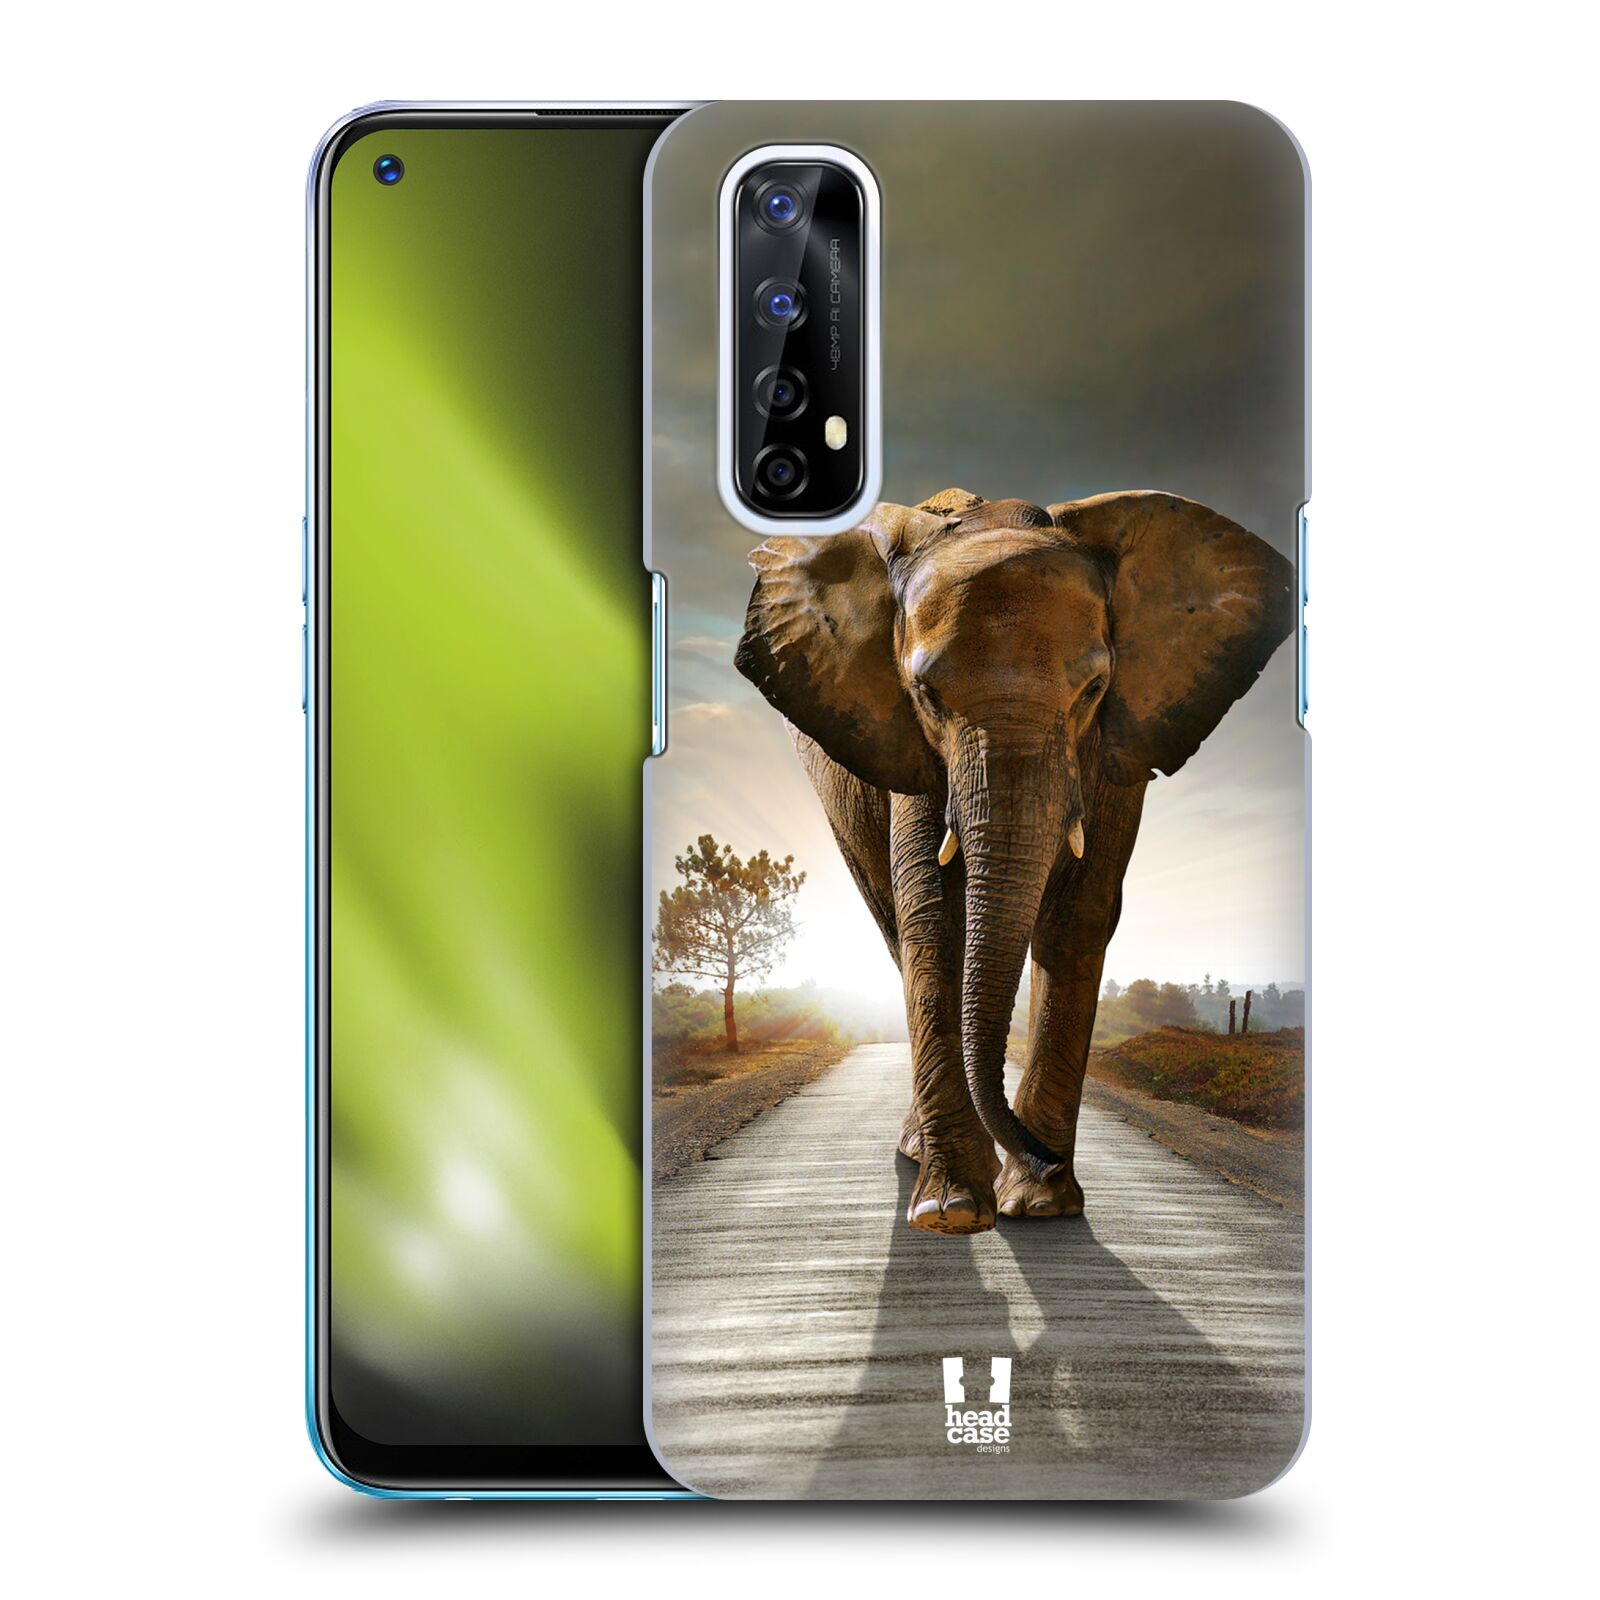 Zadní obal pro mobil Realme 7 - HEAD CASE - Svět zvířat kráčející slon